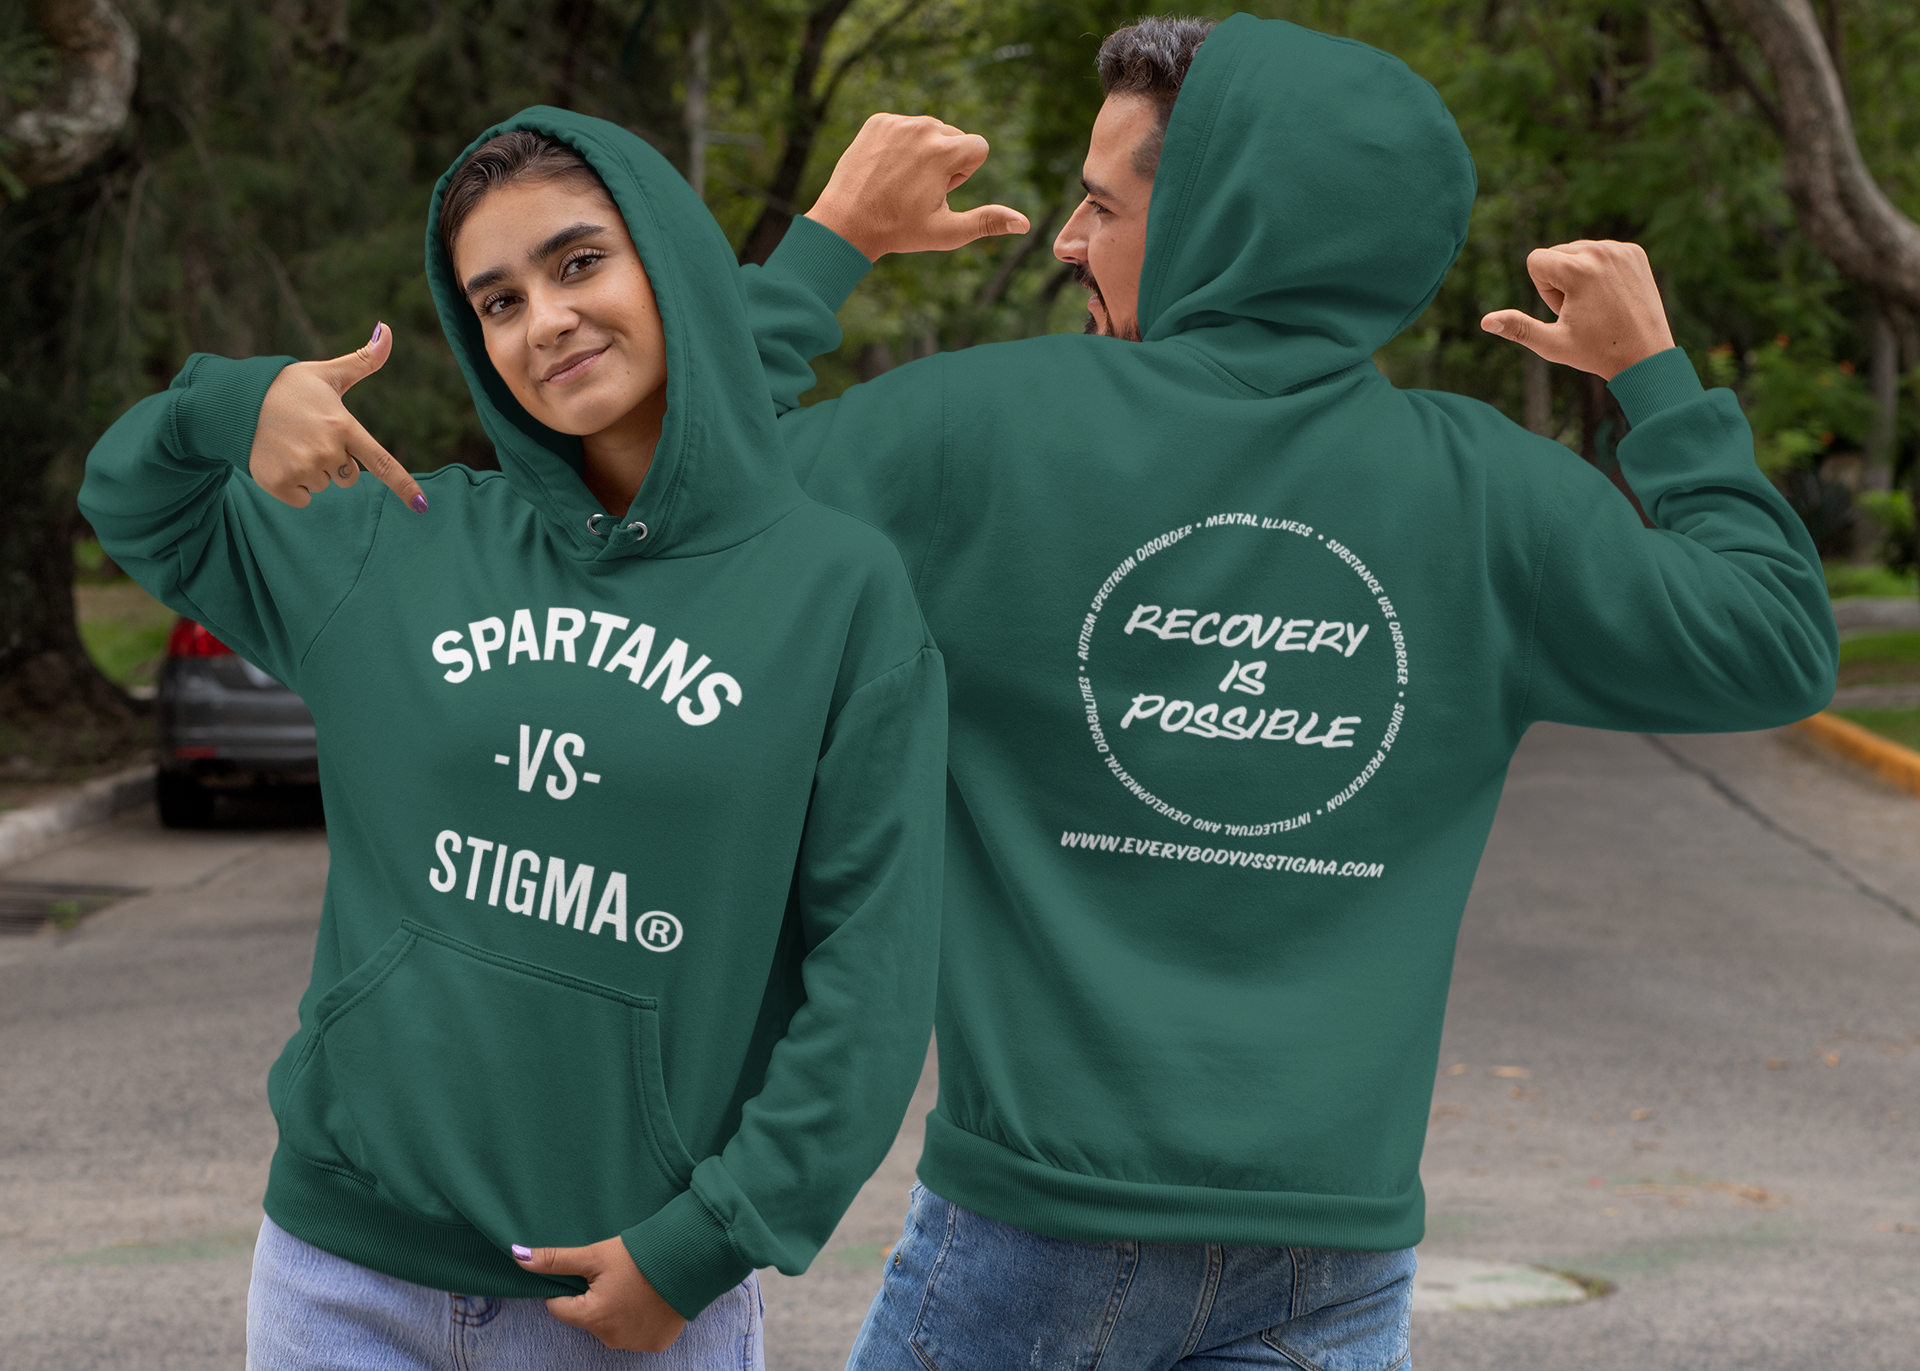 Spartans VS Stigma